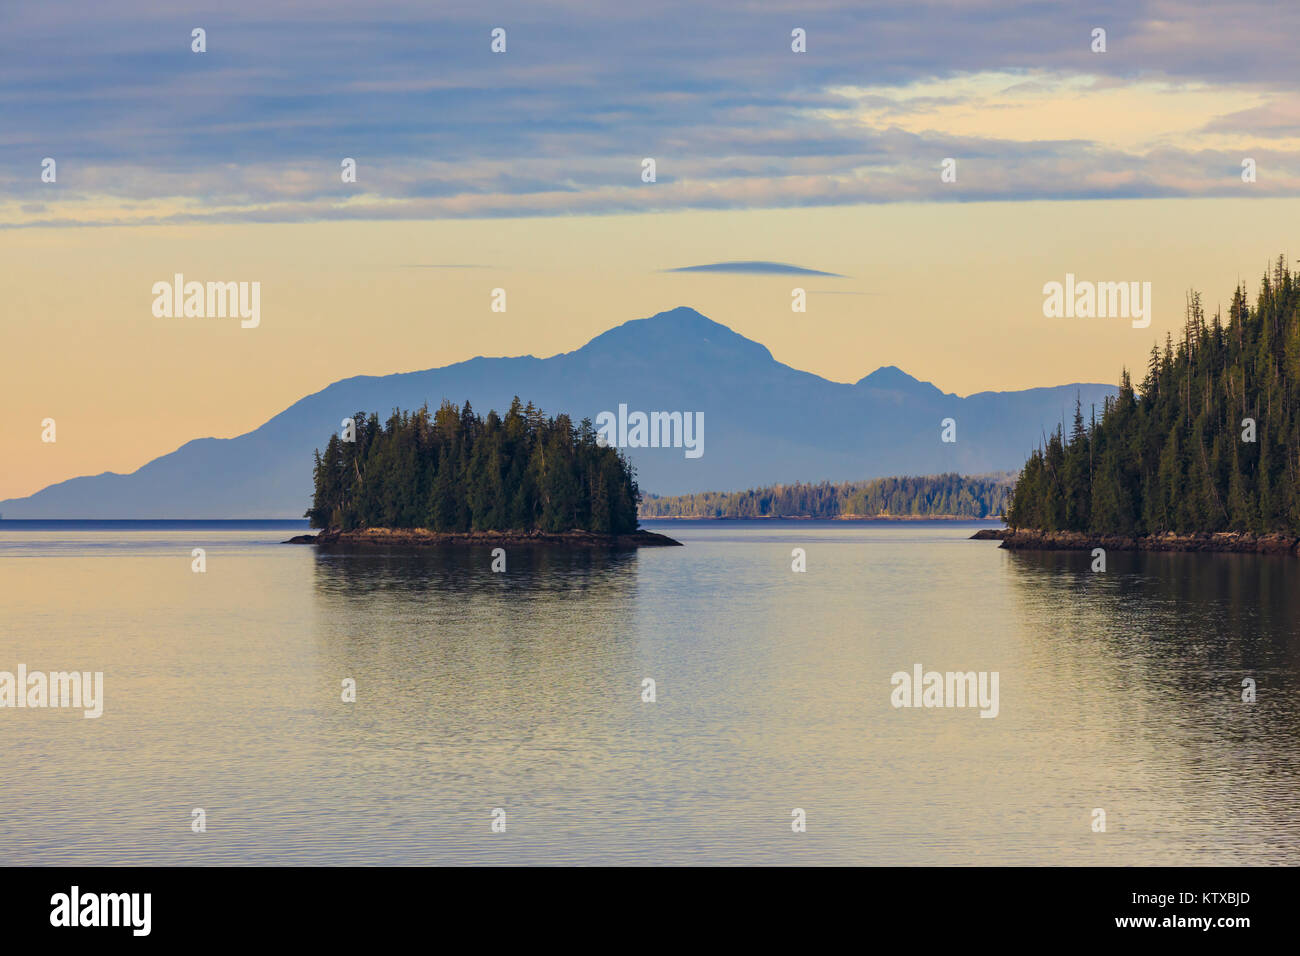 Sunrise, immettendo il Misty Fjords National Monument, isole, foreste e montagne distanti, Ketchikan, a sud-est di Alaska, Stati Uniti d'America, n. Foto Stock